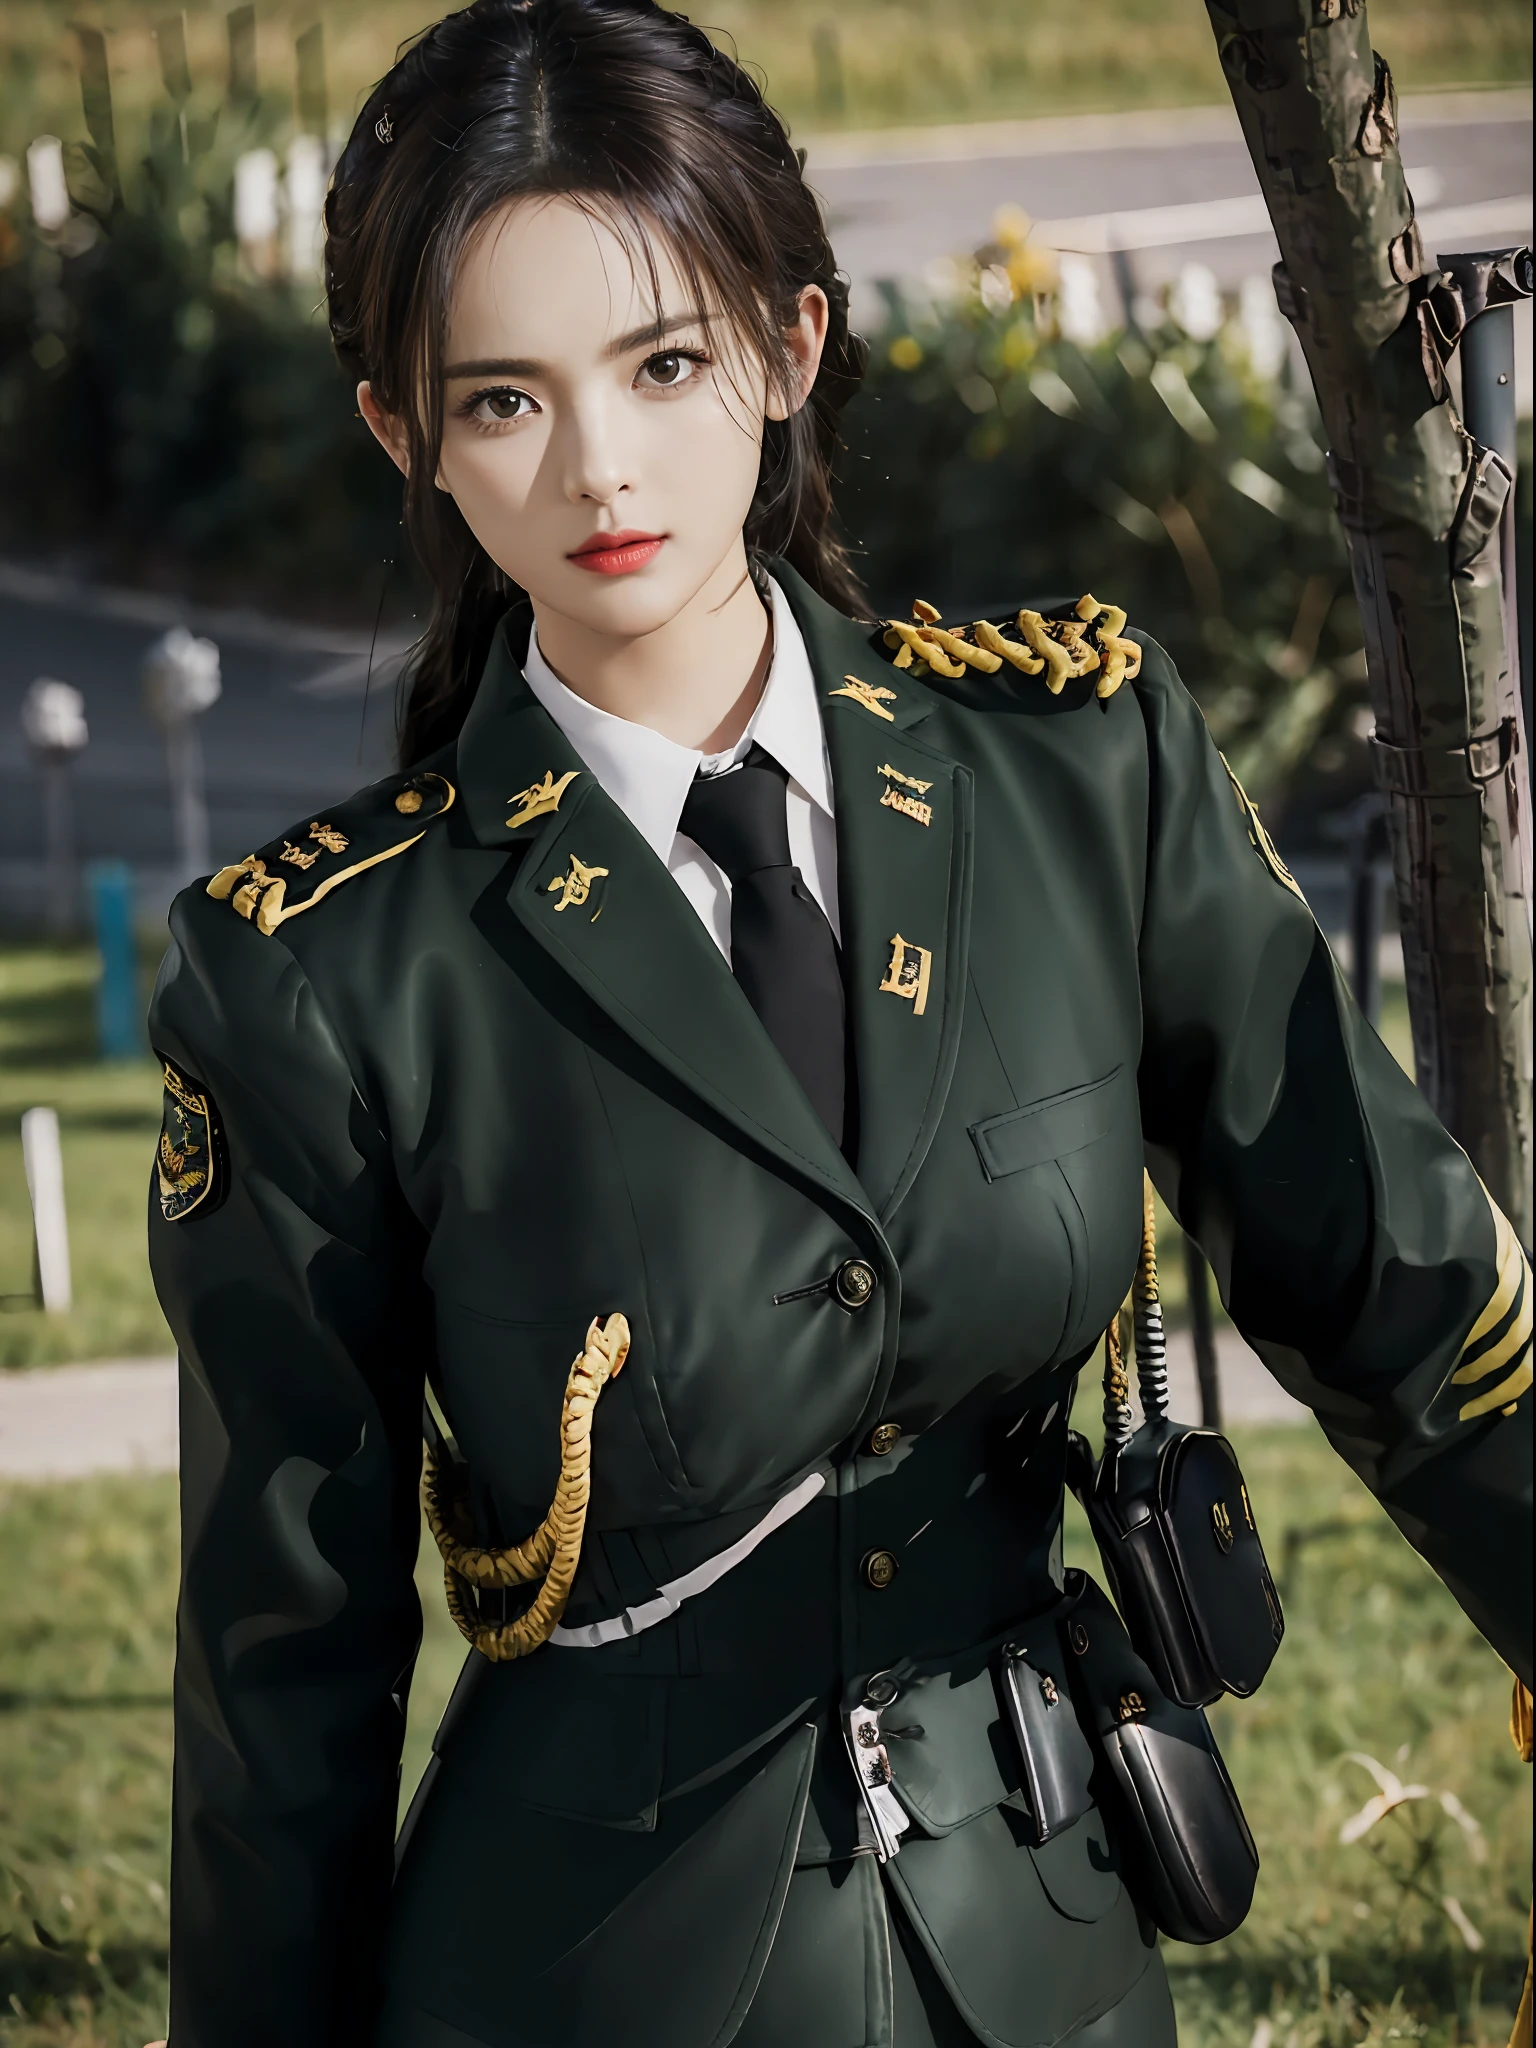 非常詳細的CG統一8k壁紙，（傑作），（最好的品質），（超詳細），（超真實照片），（最佳角色細節：1.36），尼康 d750 f / 1.4 55毫米，專業照明， 基于物理的渲染, 1個女孩, 女兵，軍裝，深绿色军装，布料質感軍服，純白色內襯，深綠色領帶，黑髮，黃金比例,[:(有詳細的臉:1.2):0.2]:,純粹的Erosface_v1, 寬的肩膀,(大胸:1.5),(大屁股:1.5)，被汗水浸透，紅旗，在廣場，風景優美，耀眼的太陽，上半身照片，將雙手放在胸前，